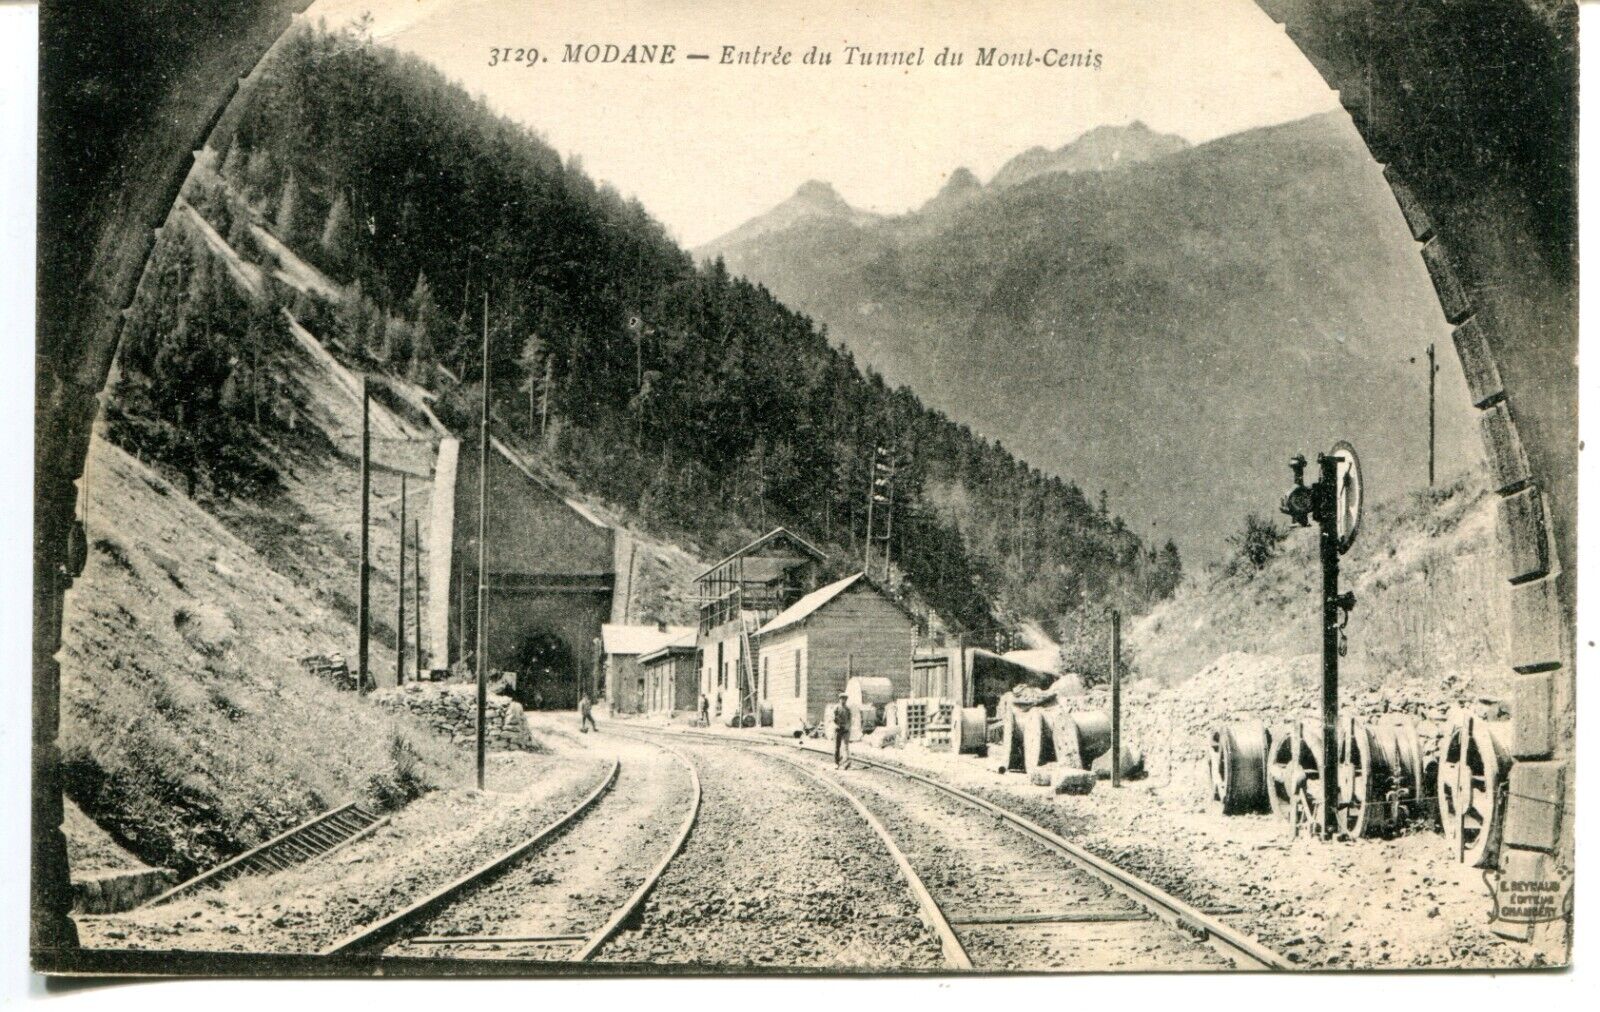 France Modane - Entree du Tunnel du Mont-Cenis old postcard